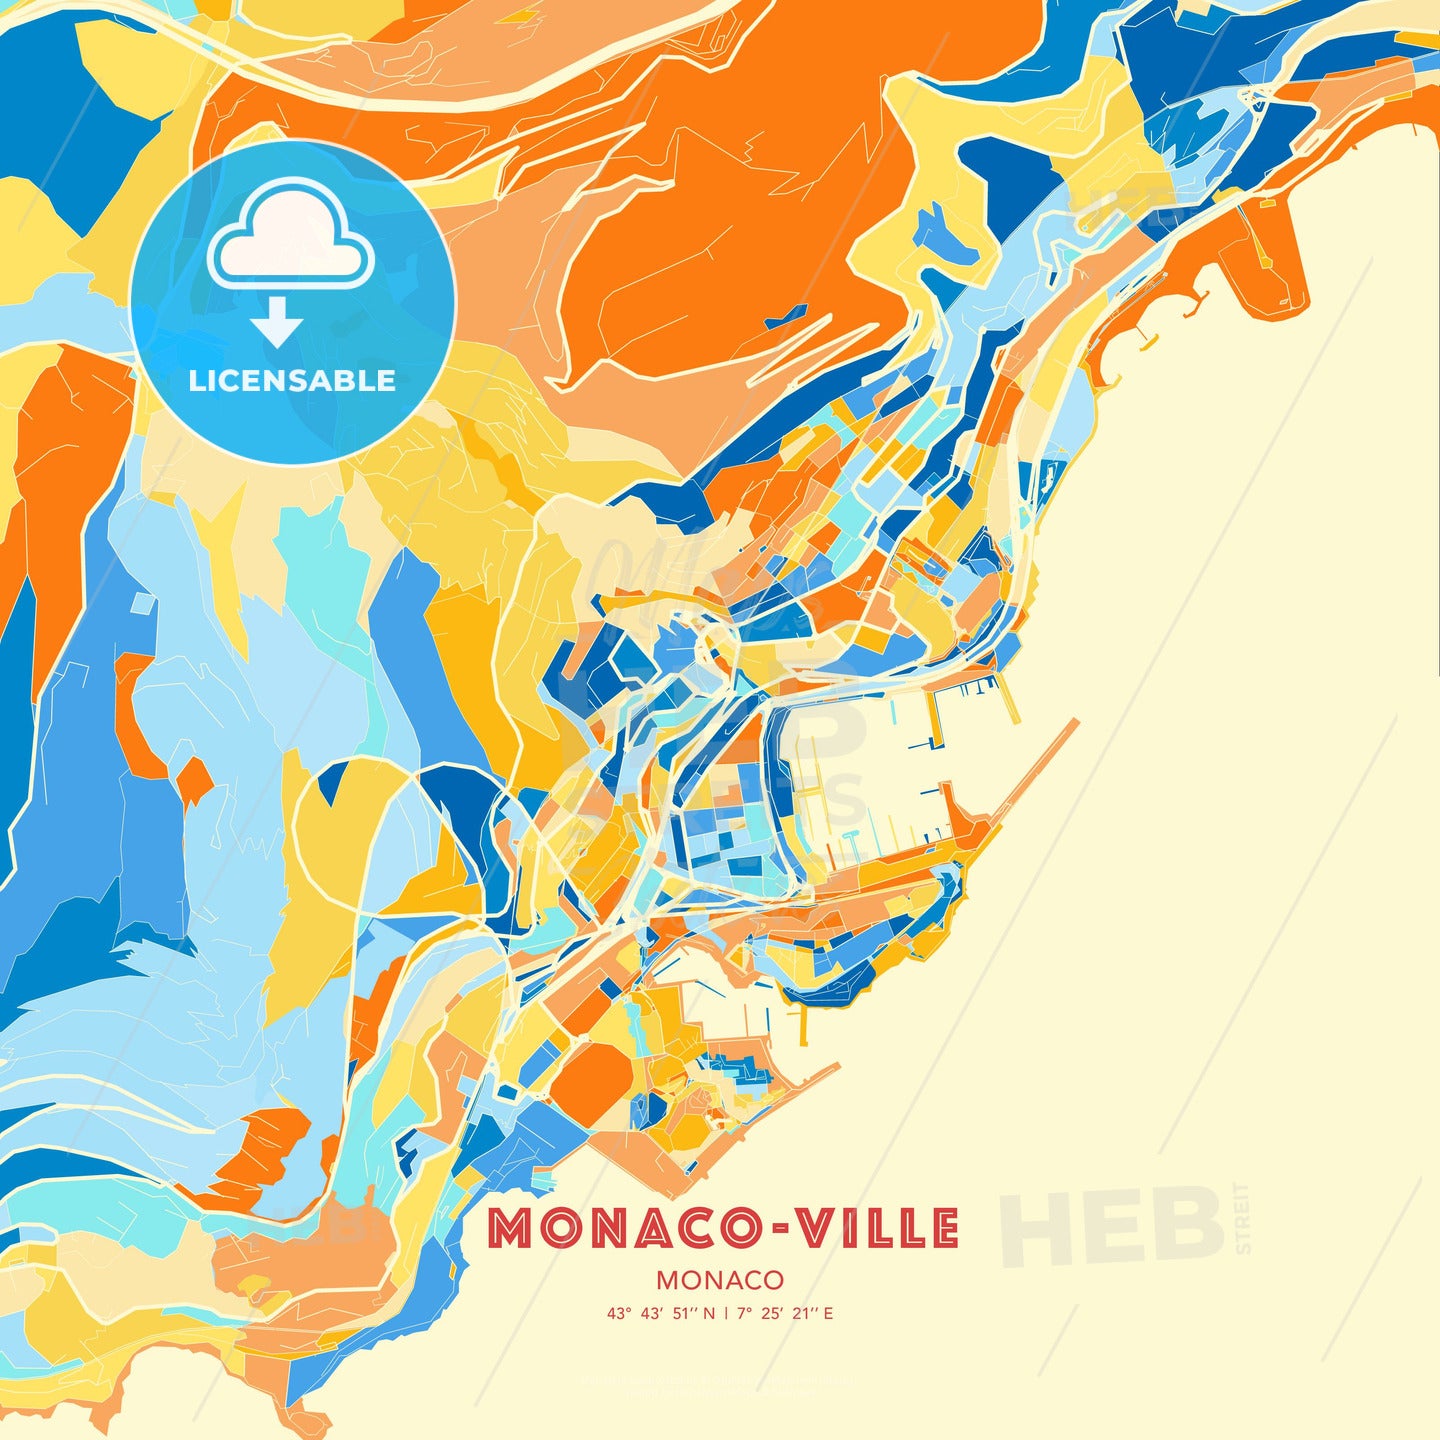 Monaco-Ville, Monaco, map - HEBSTREITS Sketches